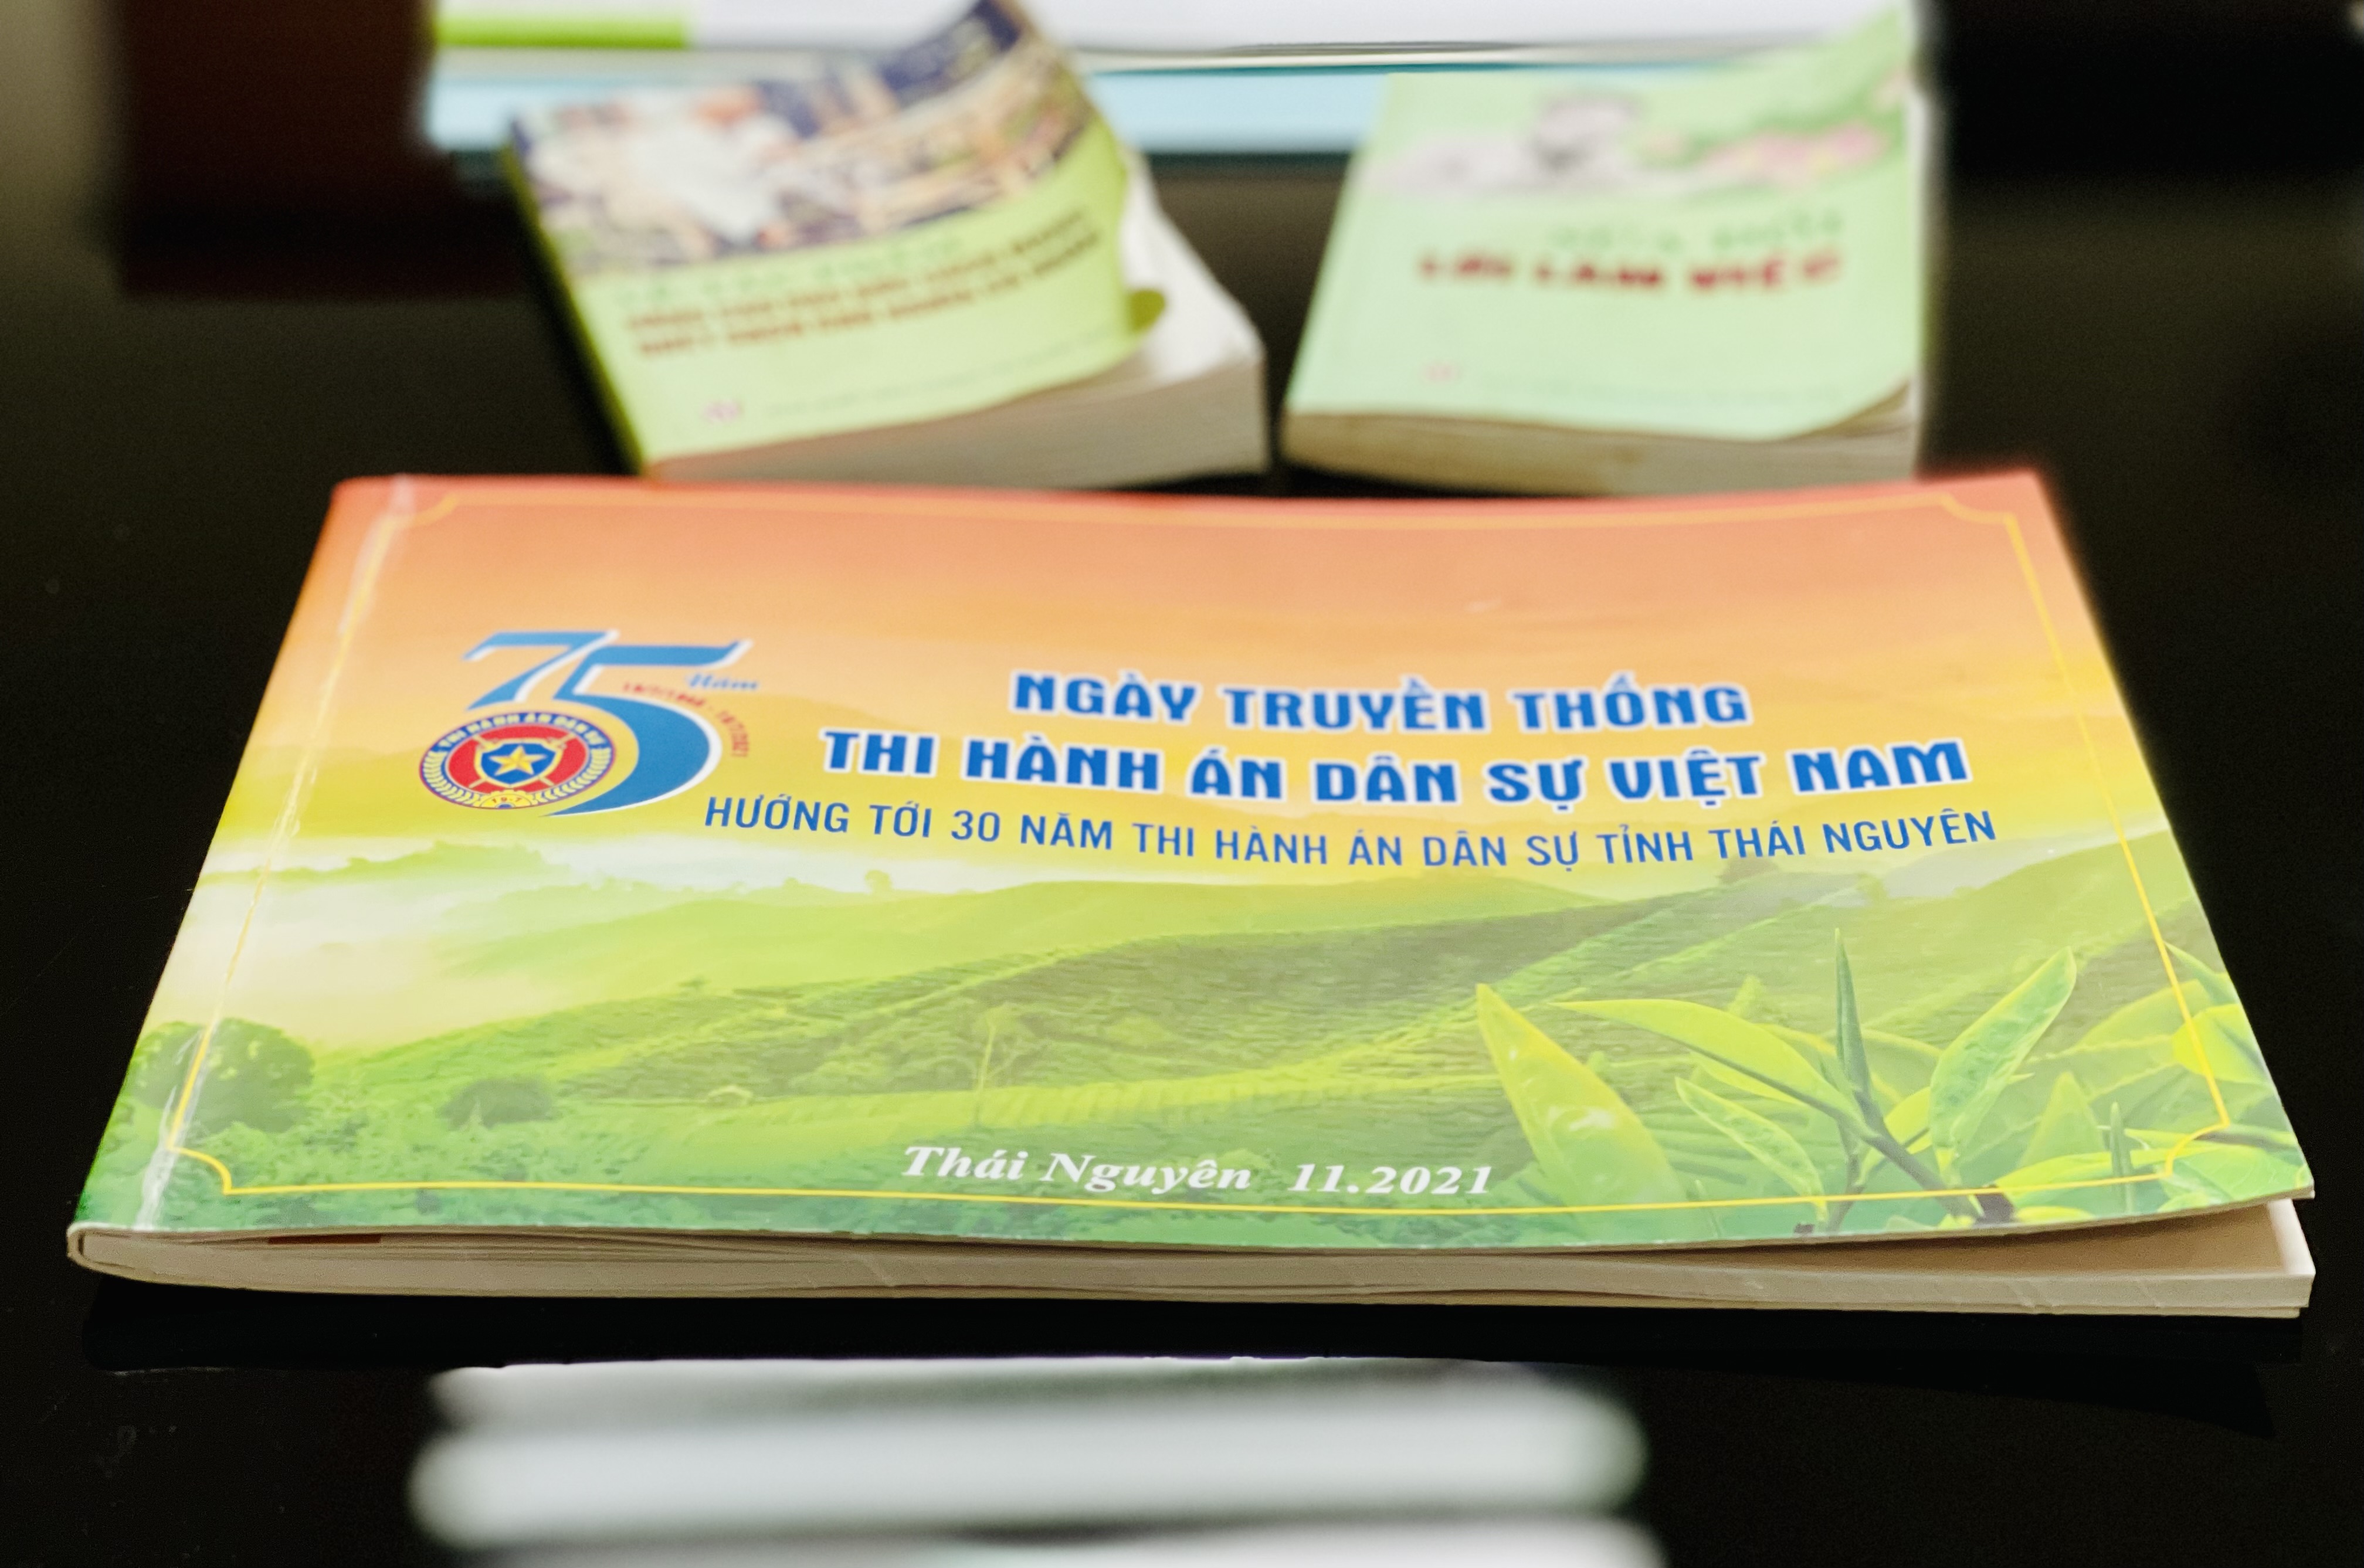 Cục Thi hành án dân sự Thái Nguyên công bố và ra mắt cuốn Kỷ yếu